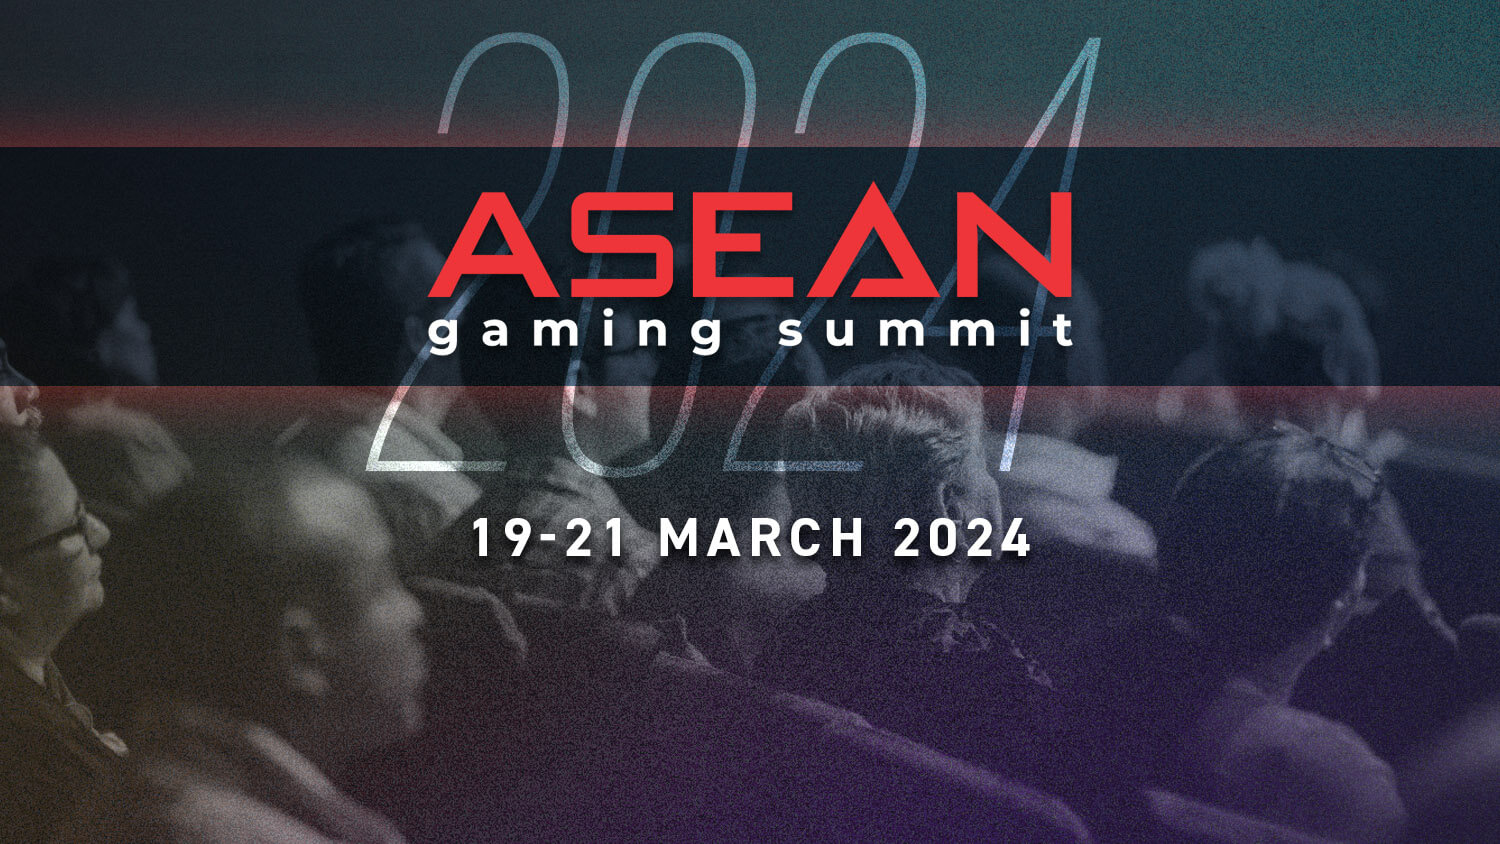 asean gaming summit 2024